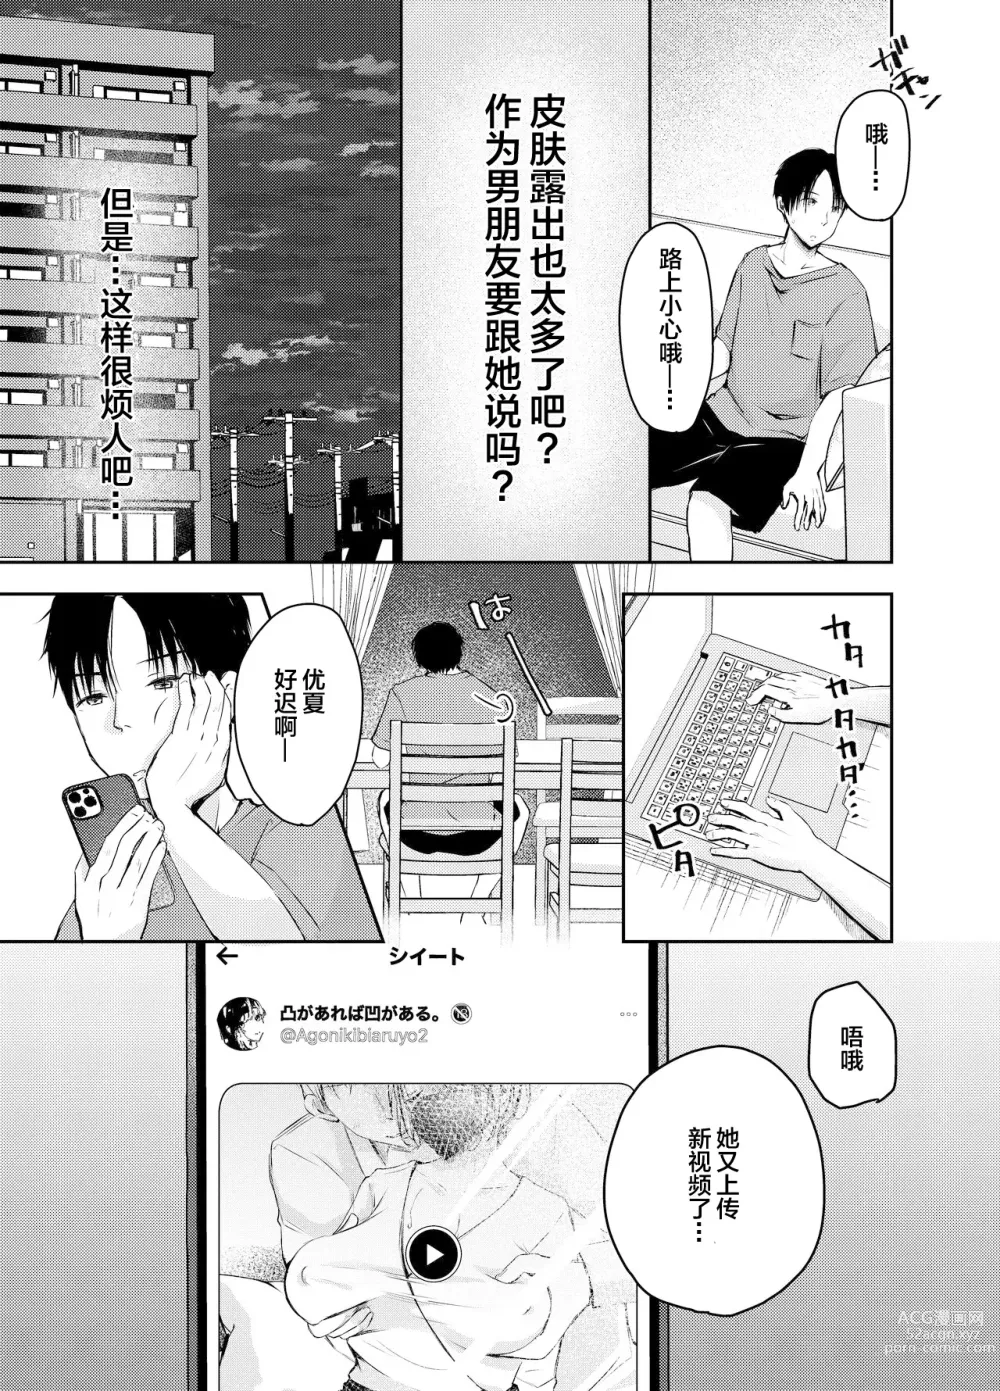 Page 12 of doujinshi Ore no Kanojo ga Hamedori suru Hazu ga Nai.